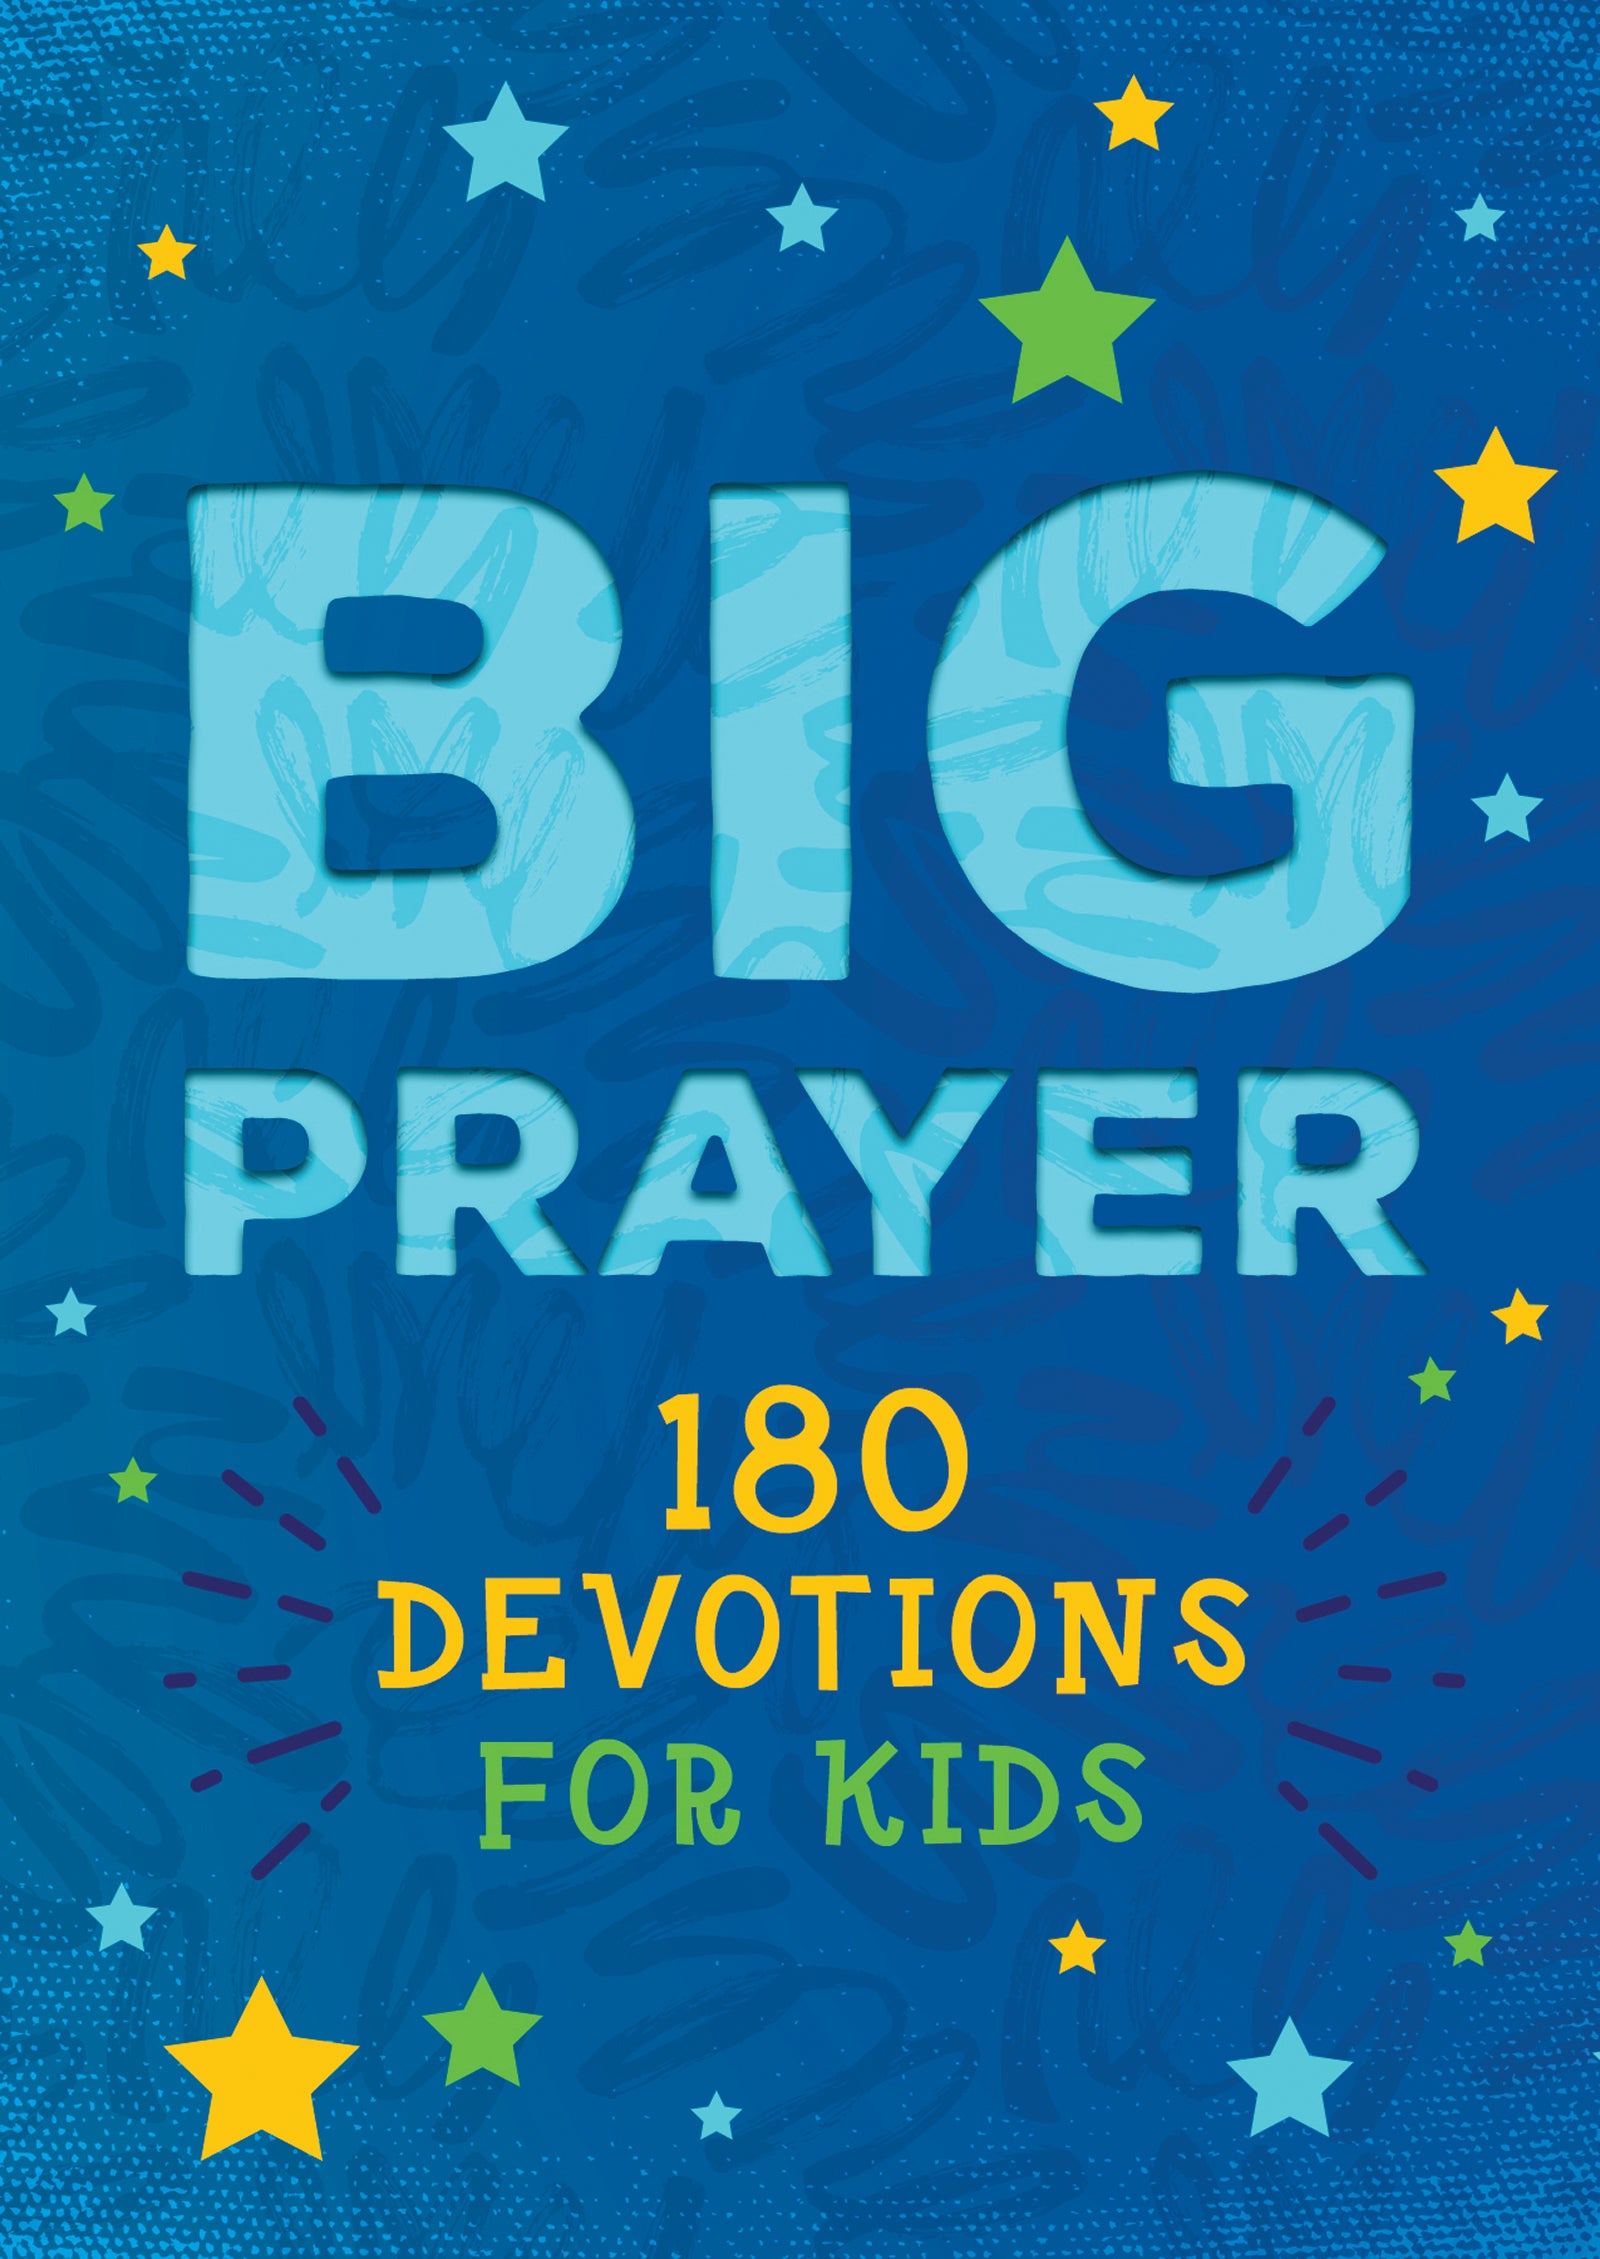 Big Prayer - The Christian Gift Company